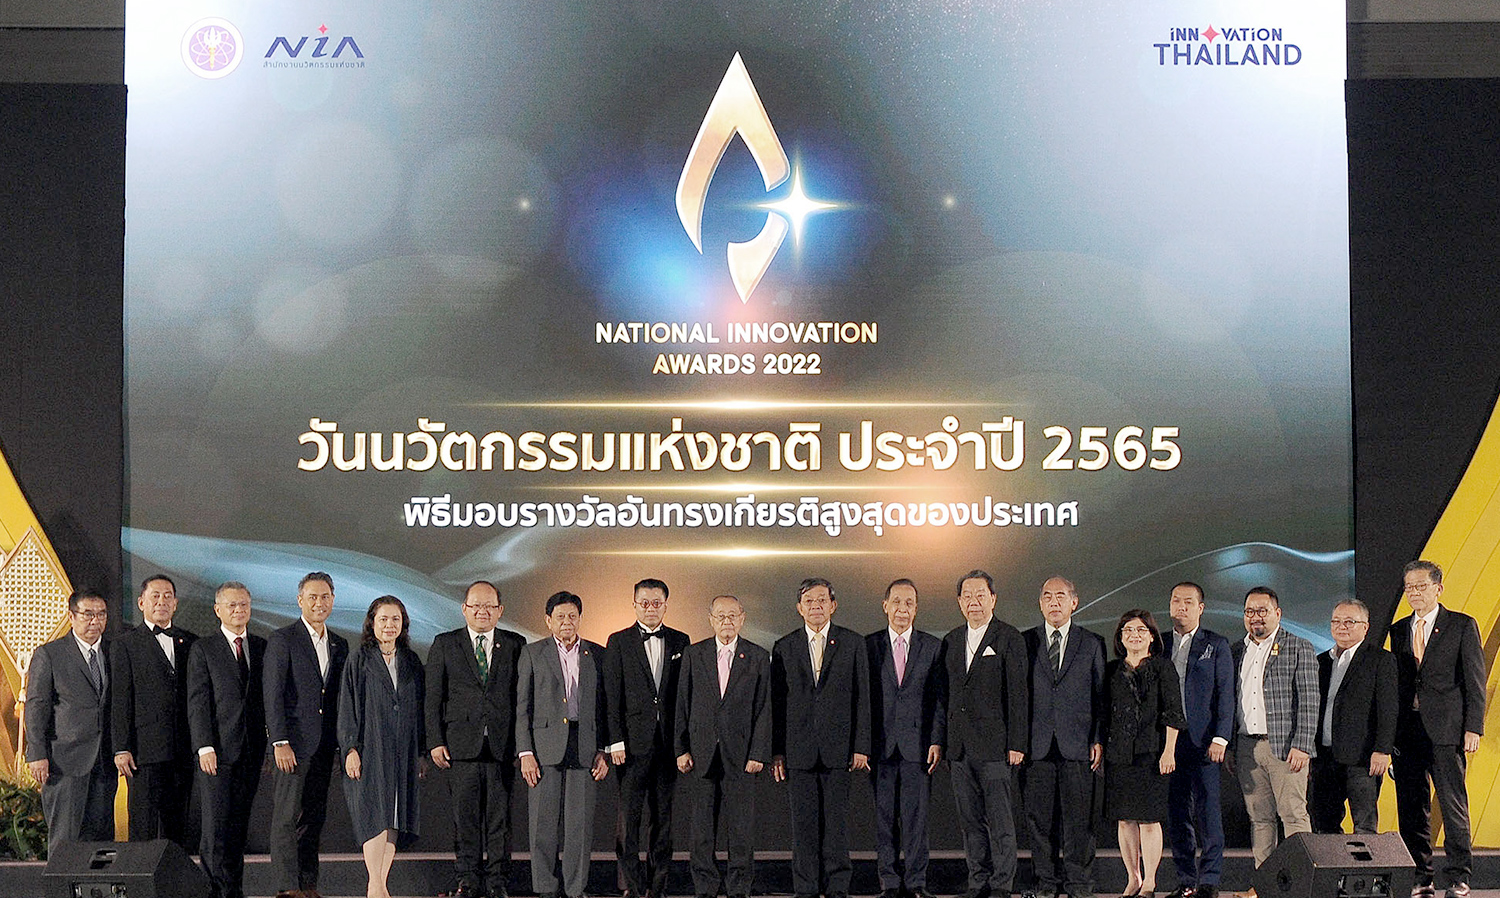 เอ็นไอเอประกาศผลสุดยอดนวัตกรรมไทย ประจำปี 2565  พร้อมเร่งเดินหน้าขับเคลื่อนไทยสู่ ประเทศแห่งนวัตกรรม